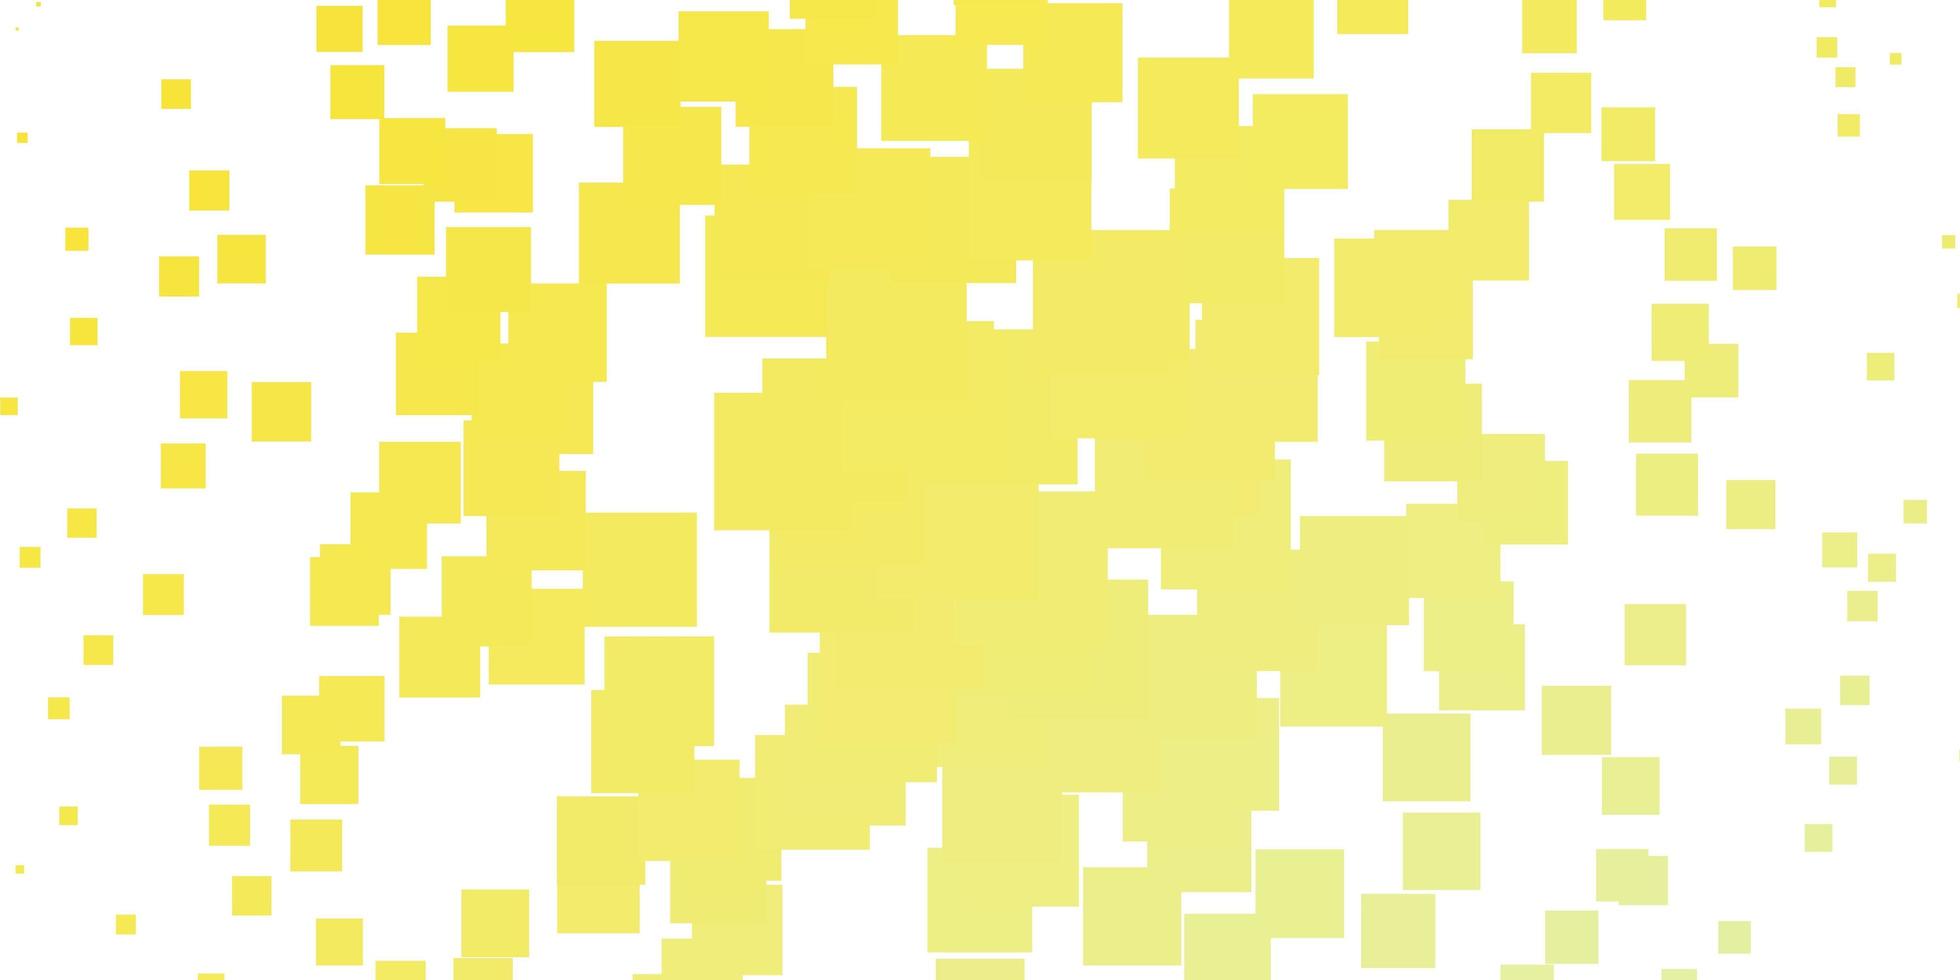 plantilla de vector verde claro, amarillo con rectángulos.